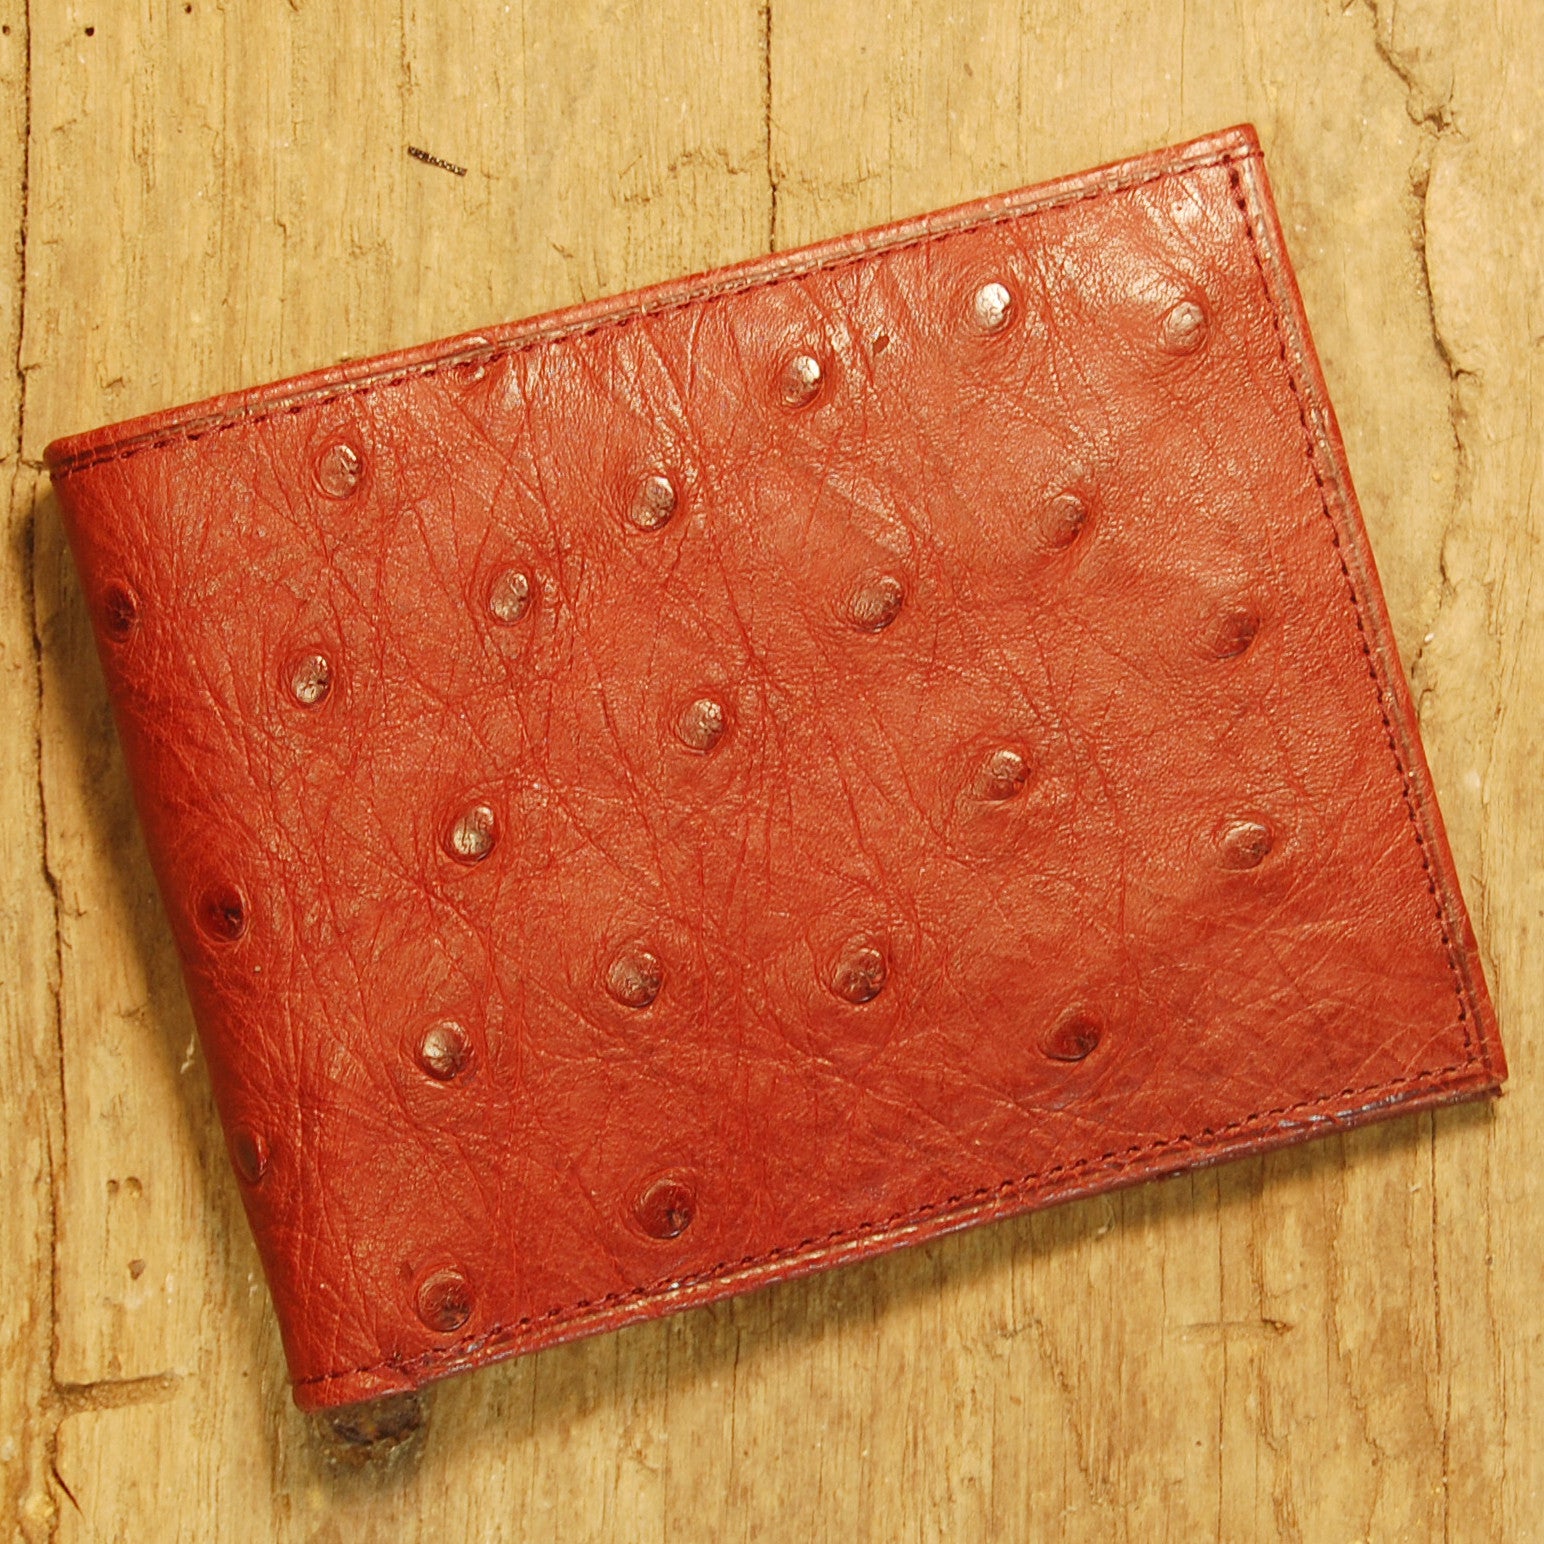 Dark's Leather Slim Wallet in Ostrich Burgundy, Front